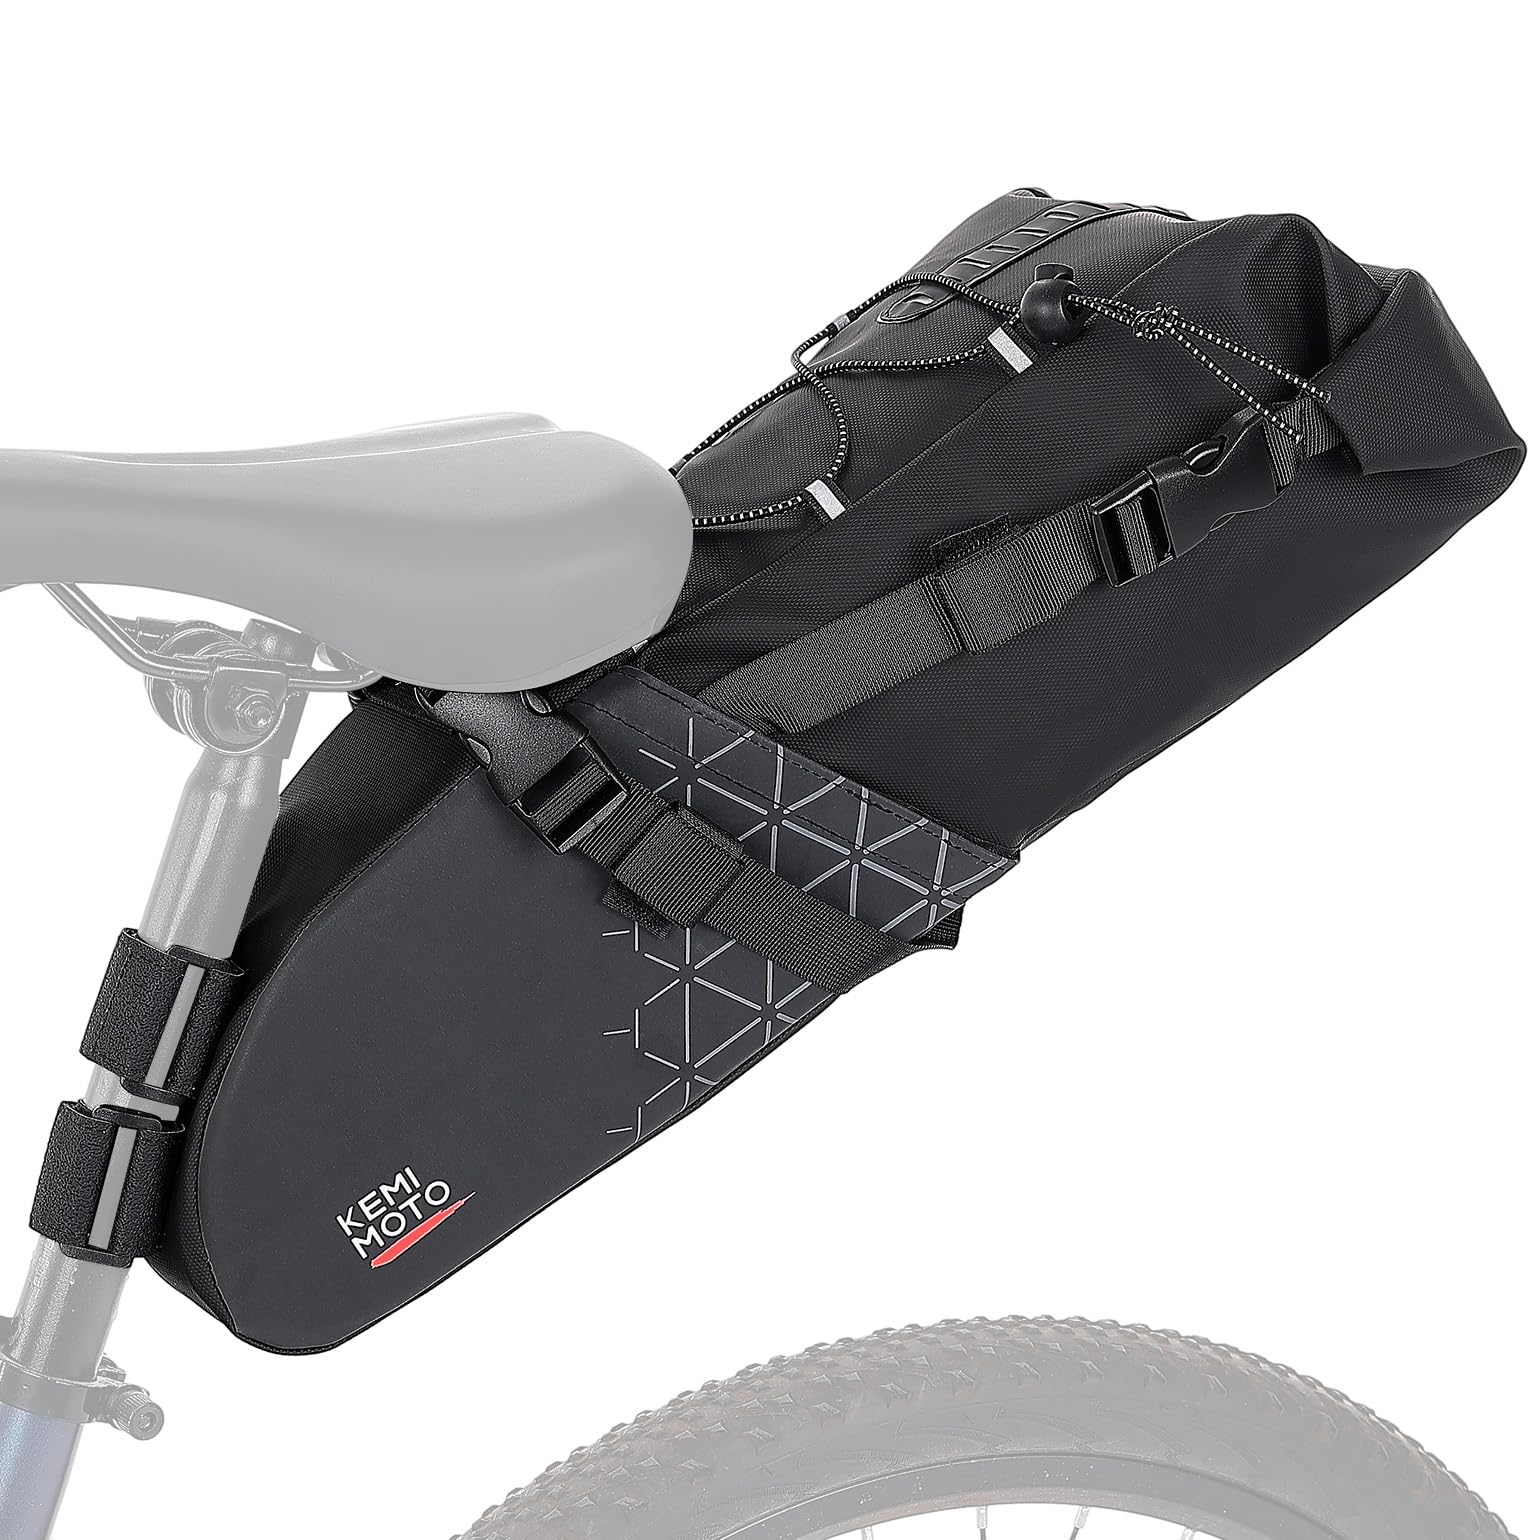 KEMIMOTO Satteltasche Fahrrad 13L, 100% wasserdichte Fahrradtasche Sattel, Rennrad Satteltasche, Fahrrad Sitztasche für E-Bike und MTB, mit Befetigungrimen zur Halterung von KEMIMOTO